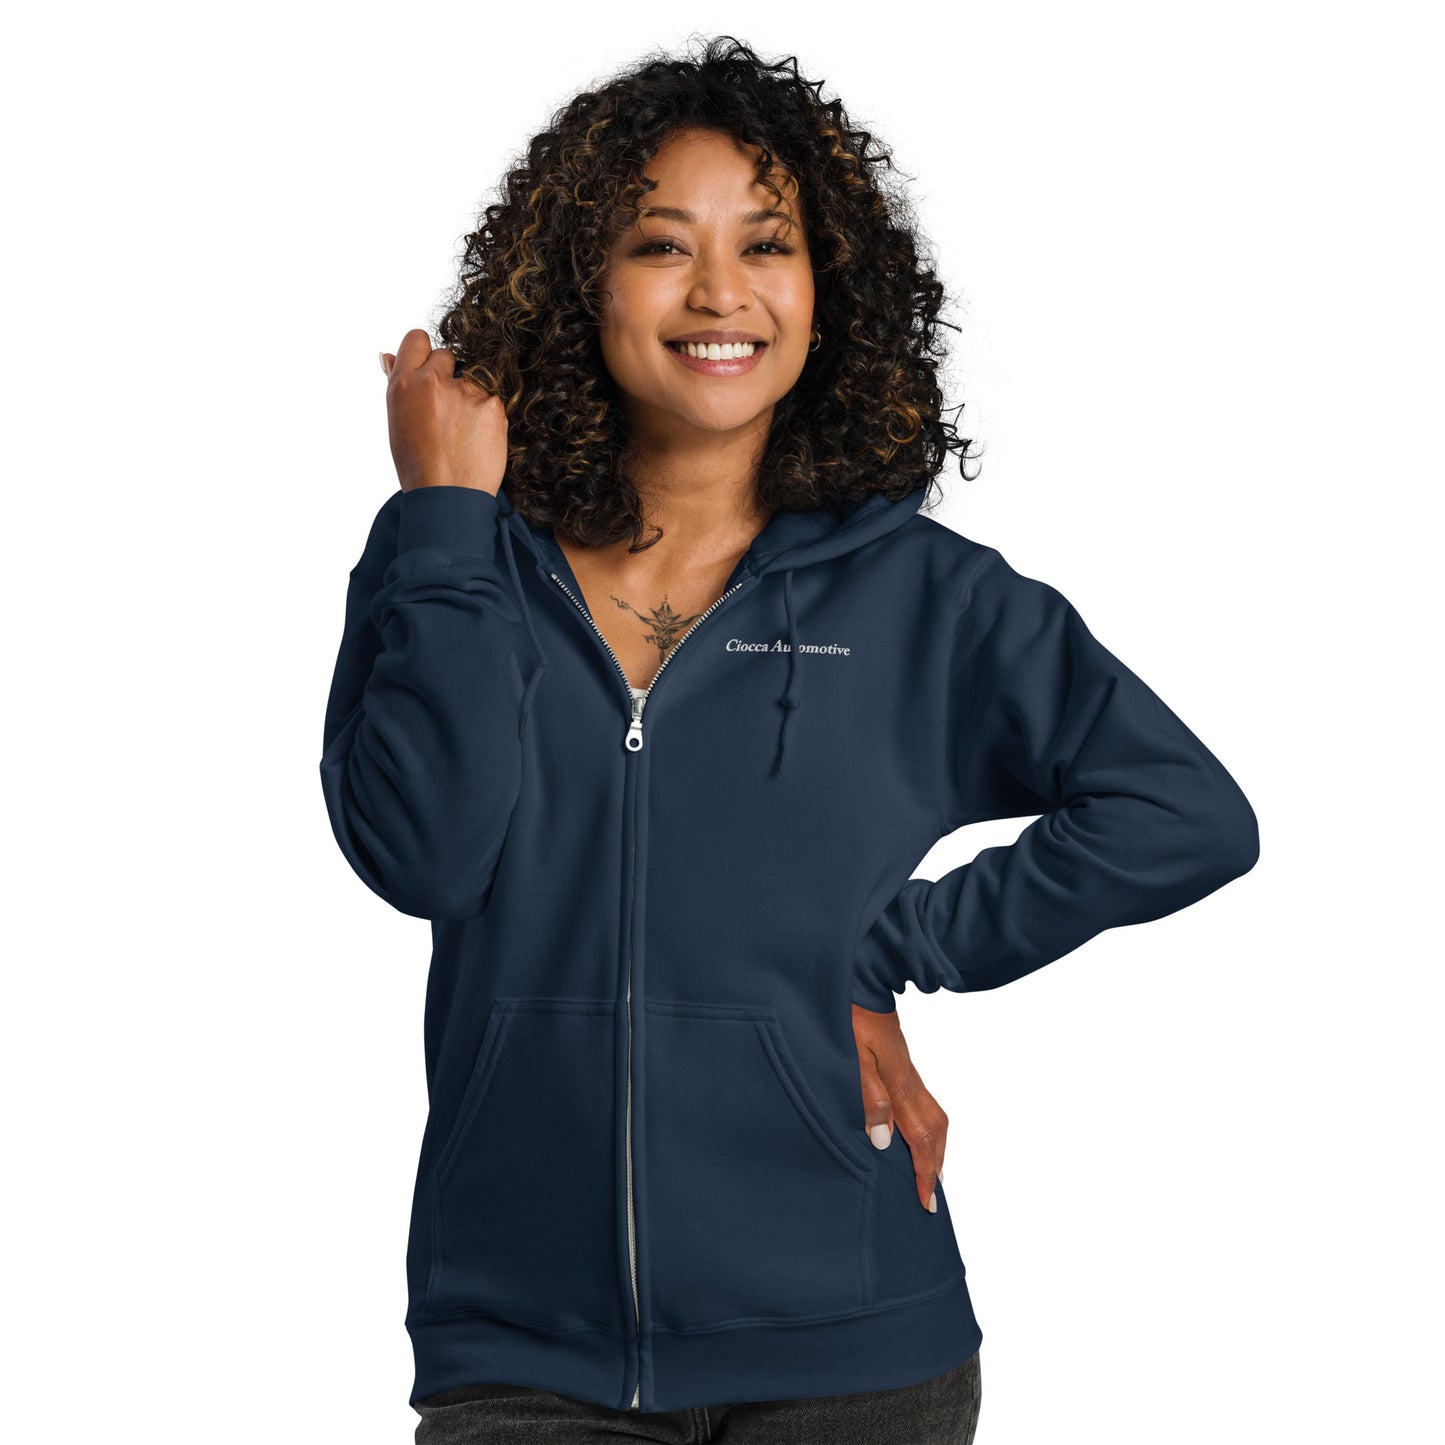 Unisex heavy blend zip hoodie - Ciocca